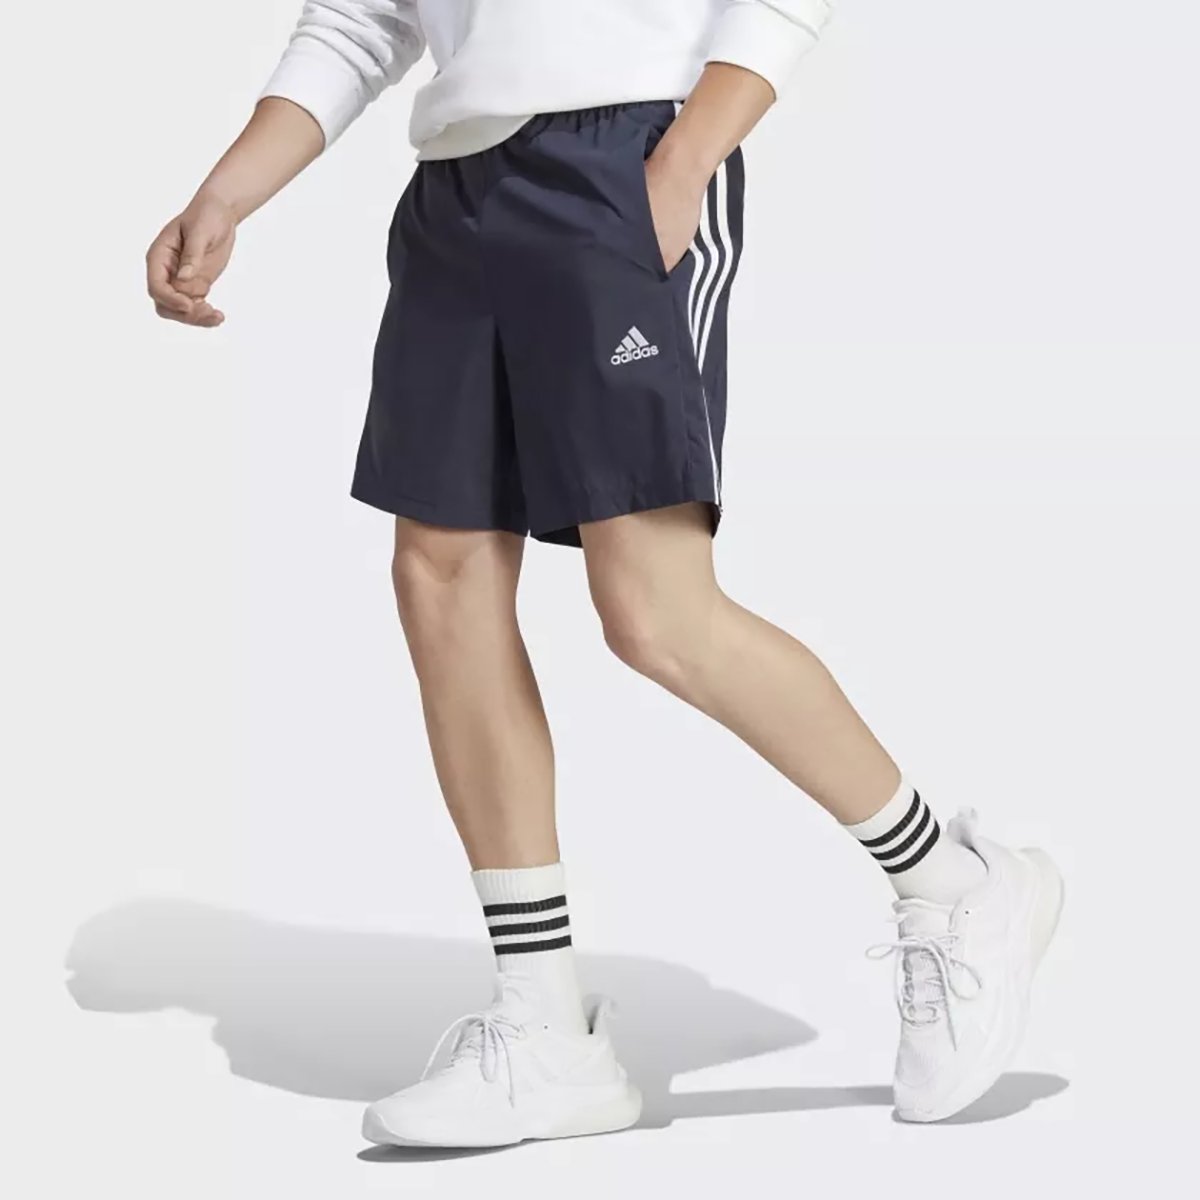 Спортивные шорты Adidas для мужчин, IC1485, размер 2XL, чёрно-белые-AA35